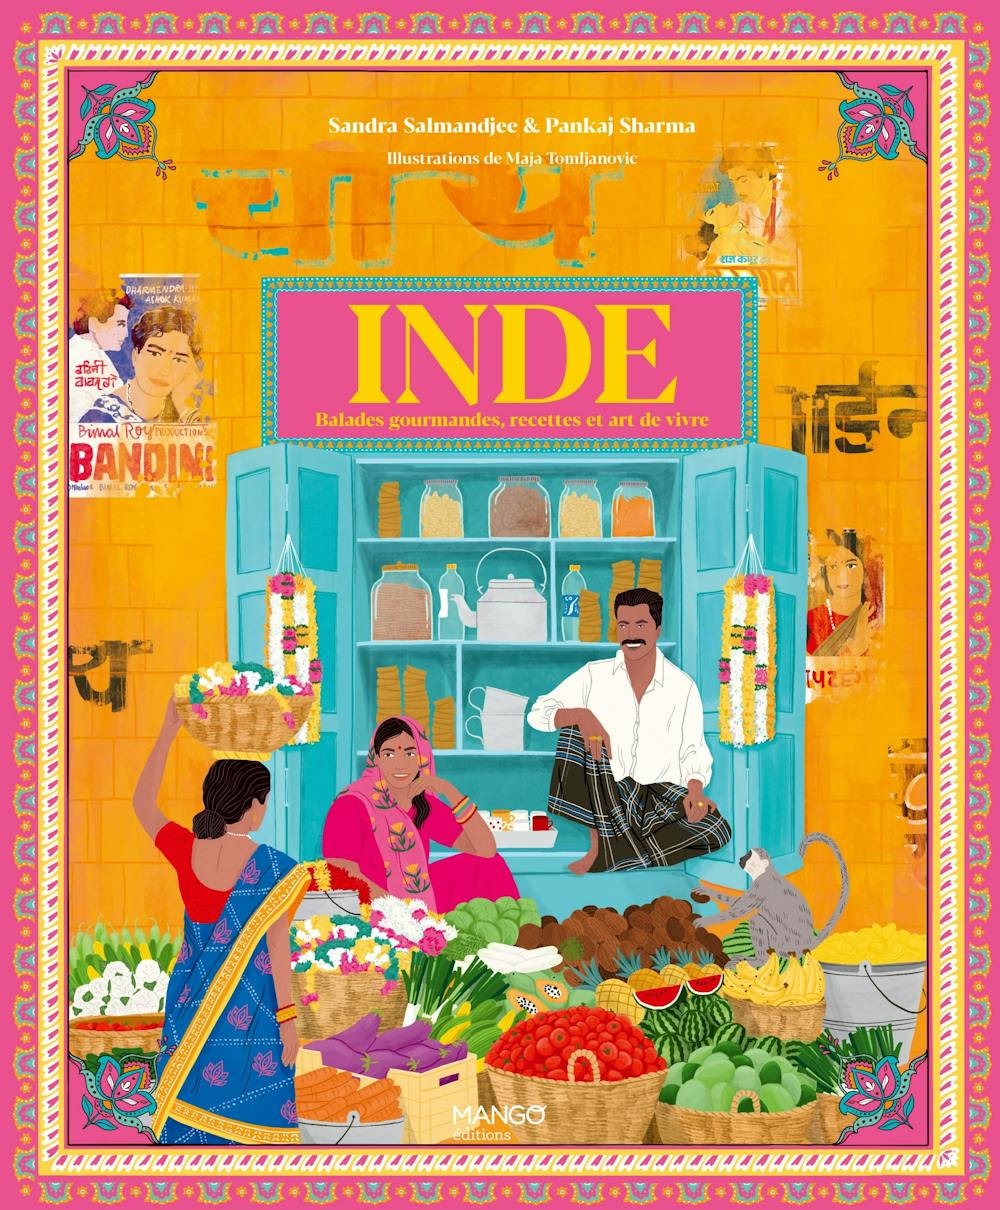 Livre de cuisine "Inde - Balades gourmandes, recettes et art de vivre" de Sandra Salmandjee, publié aux Edition Mango (2022)